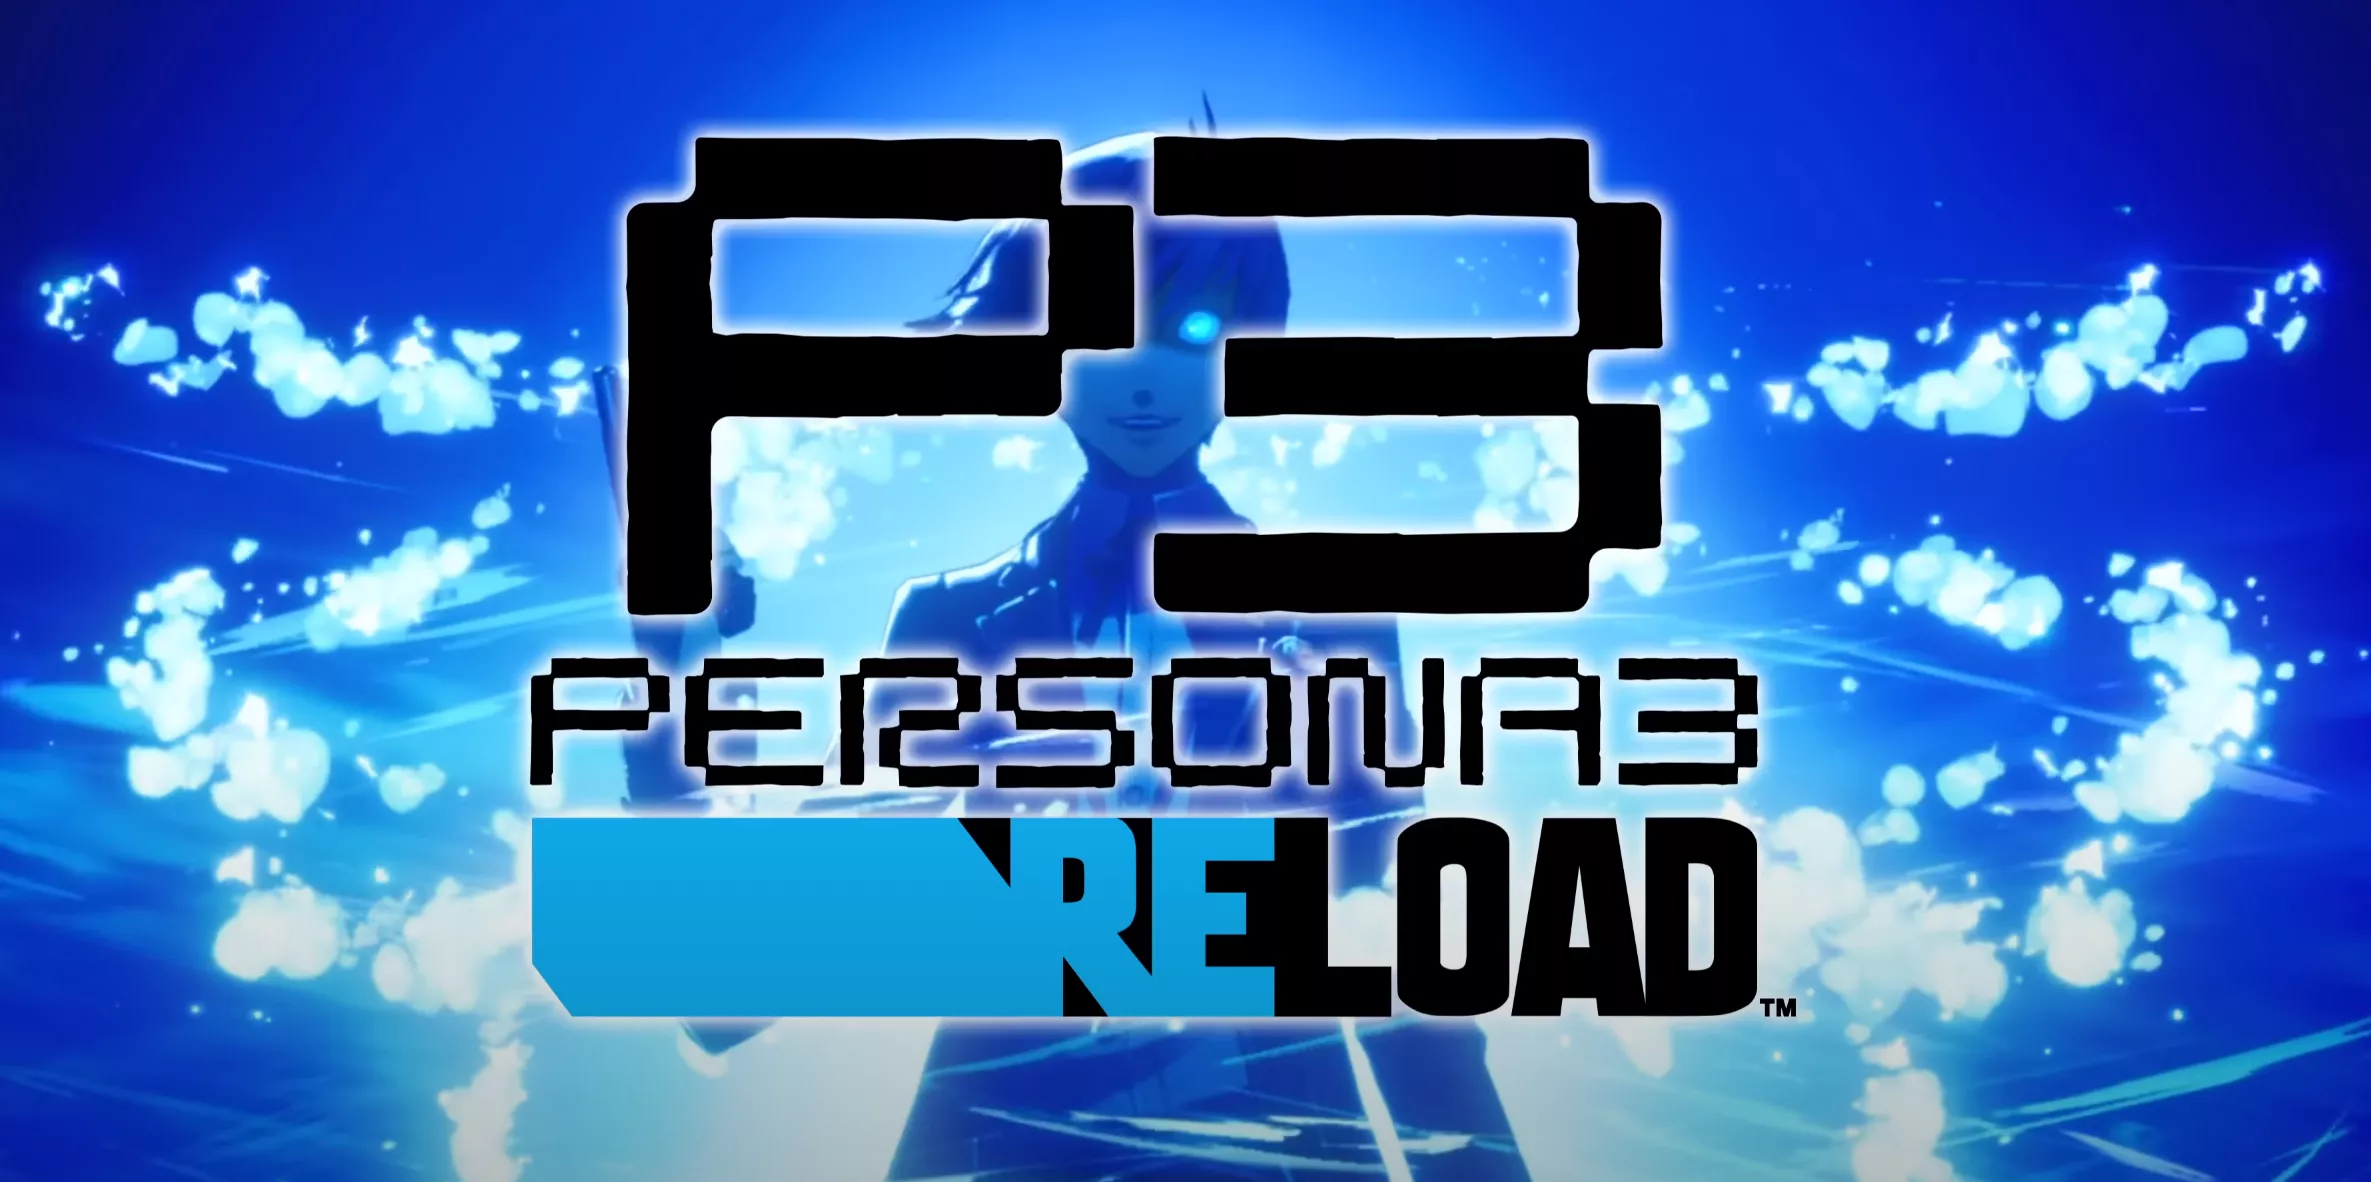 Persona 3 Reload: Trailer zu den Combat Features Heropic